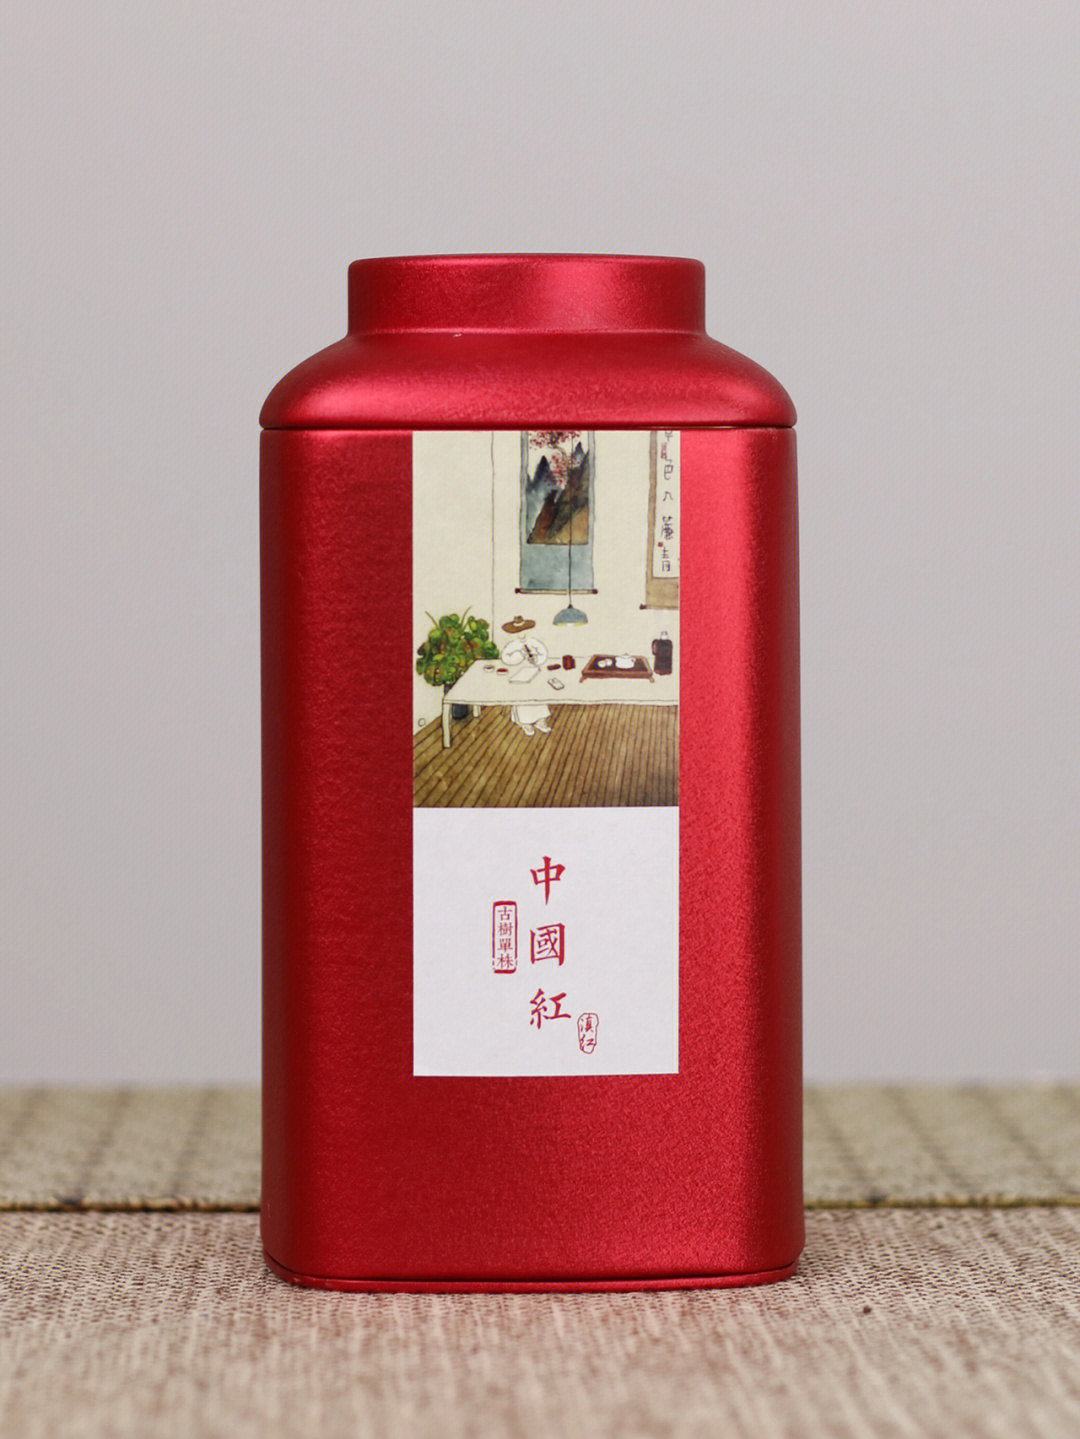 一款比较特别的云南滇红茶中国红